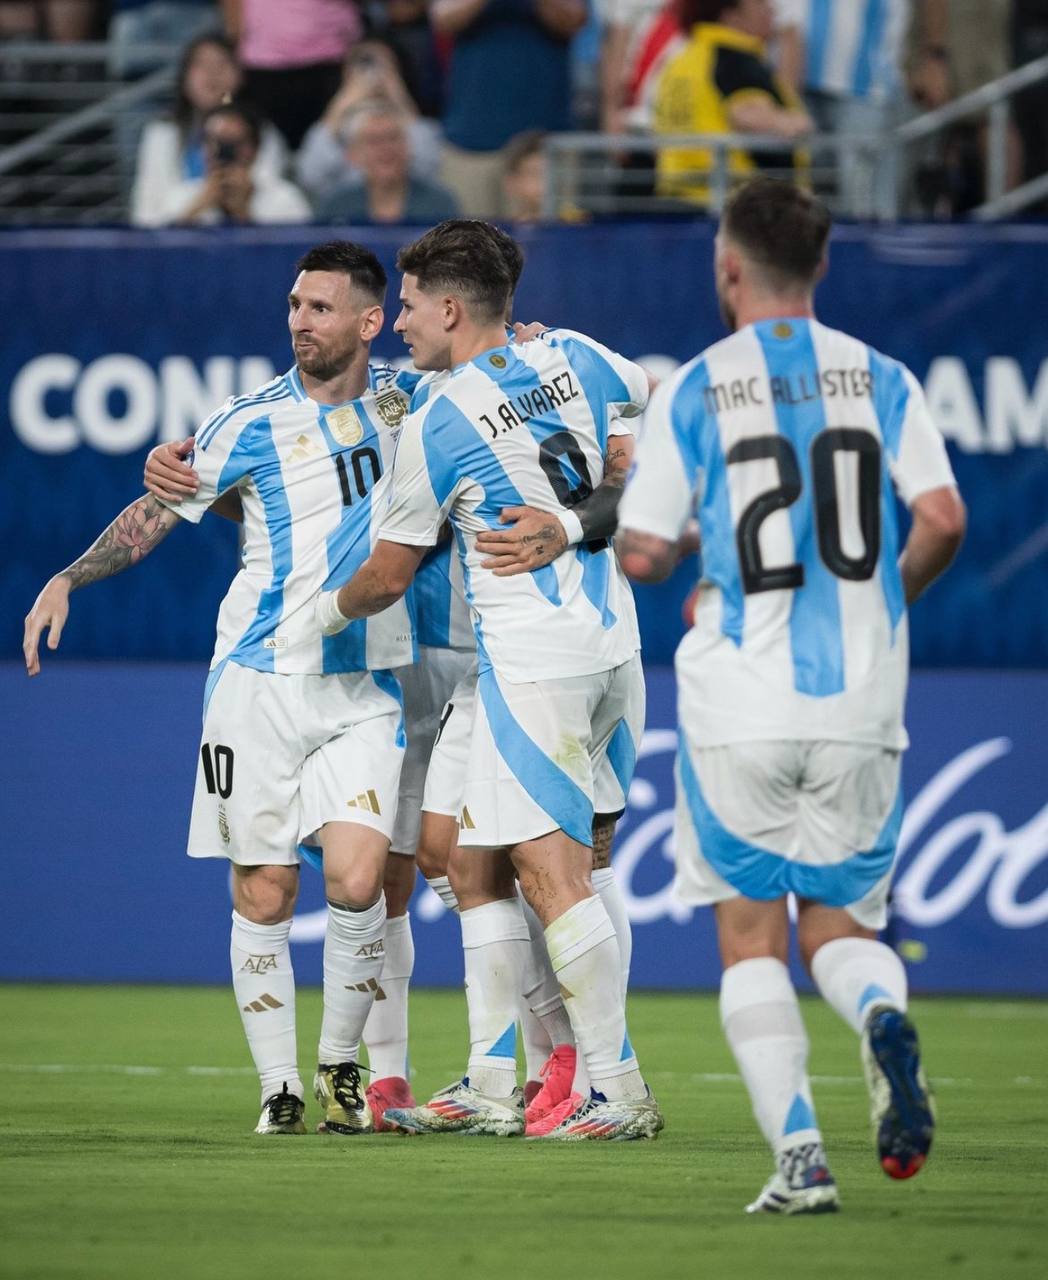 А вот Месси все-таки забил на Копа Америка. Его гол помог аргентинцам обыграть Канаду со счетом 2:0. В итоге Лео был признан лучшим игроком матча, а Аргентина вышла в финал.  К слову, это уже 10 крупный турнир, на котором Месси забил за сборную Аргентины.